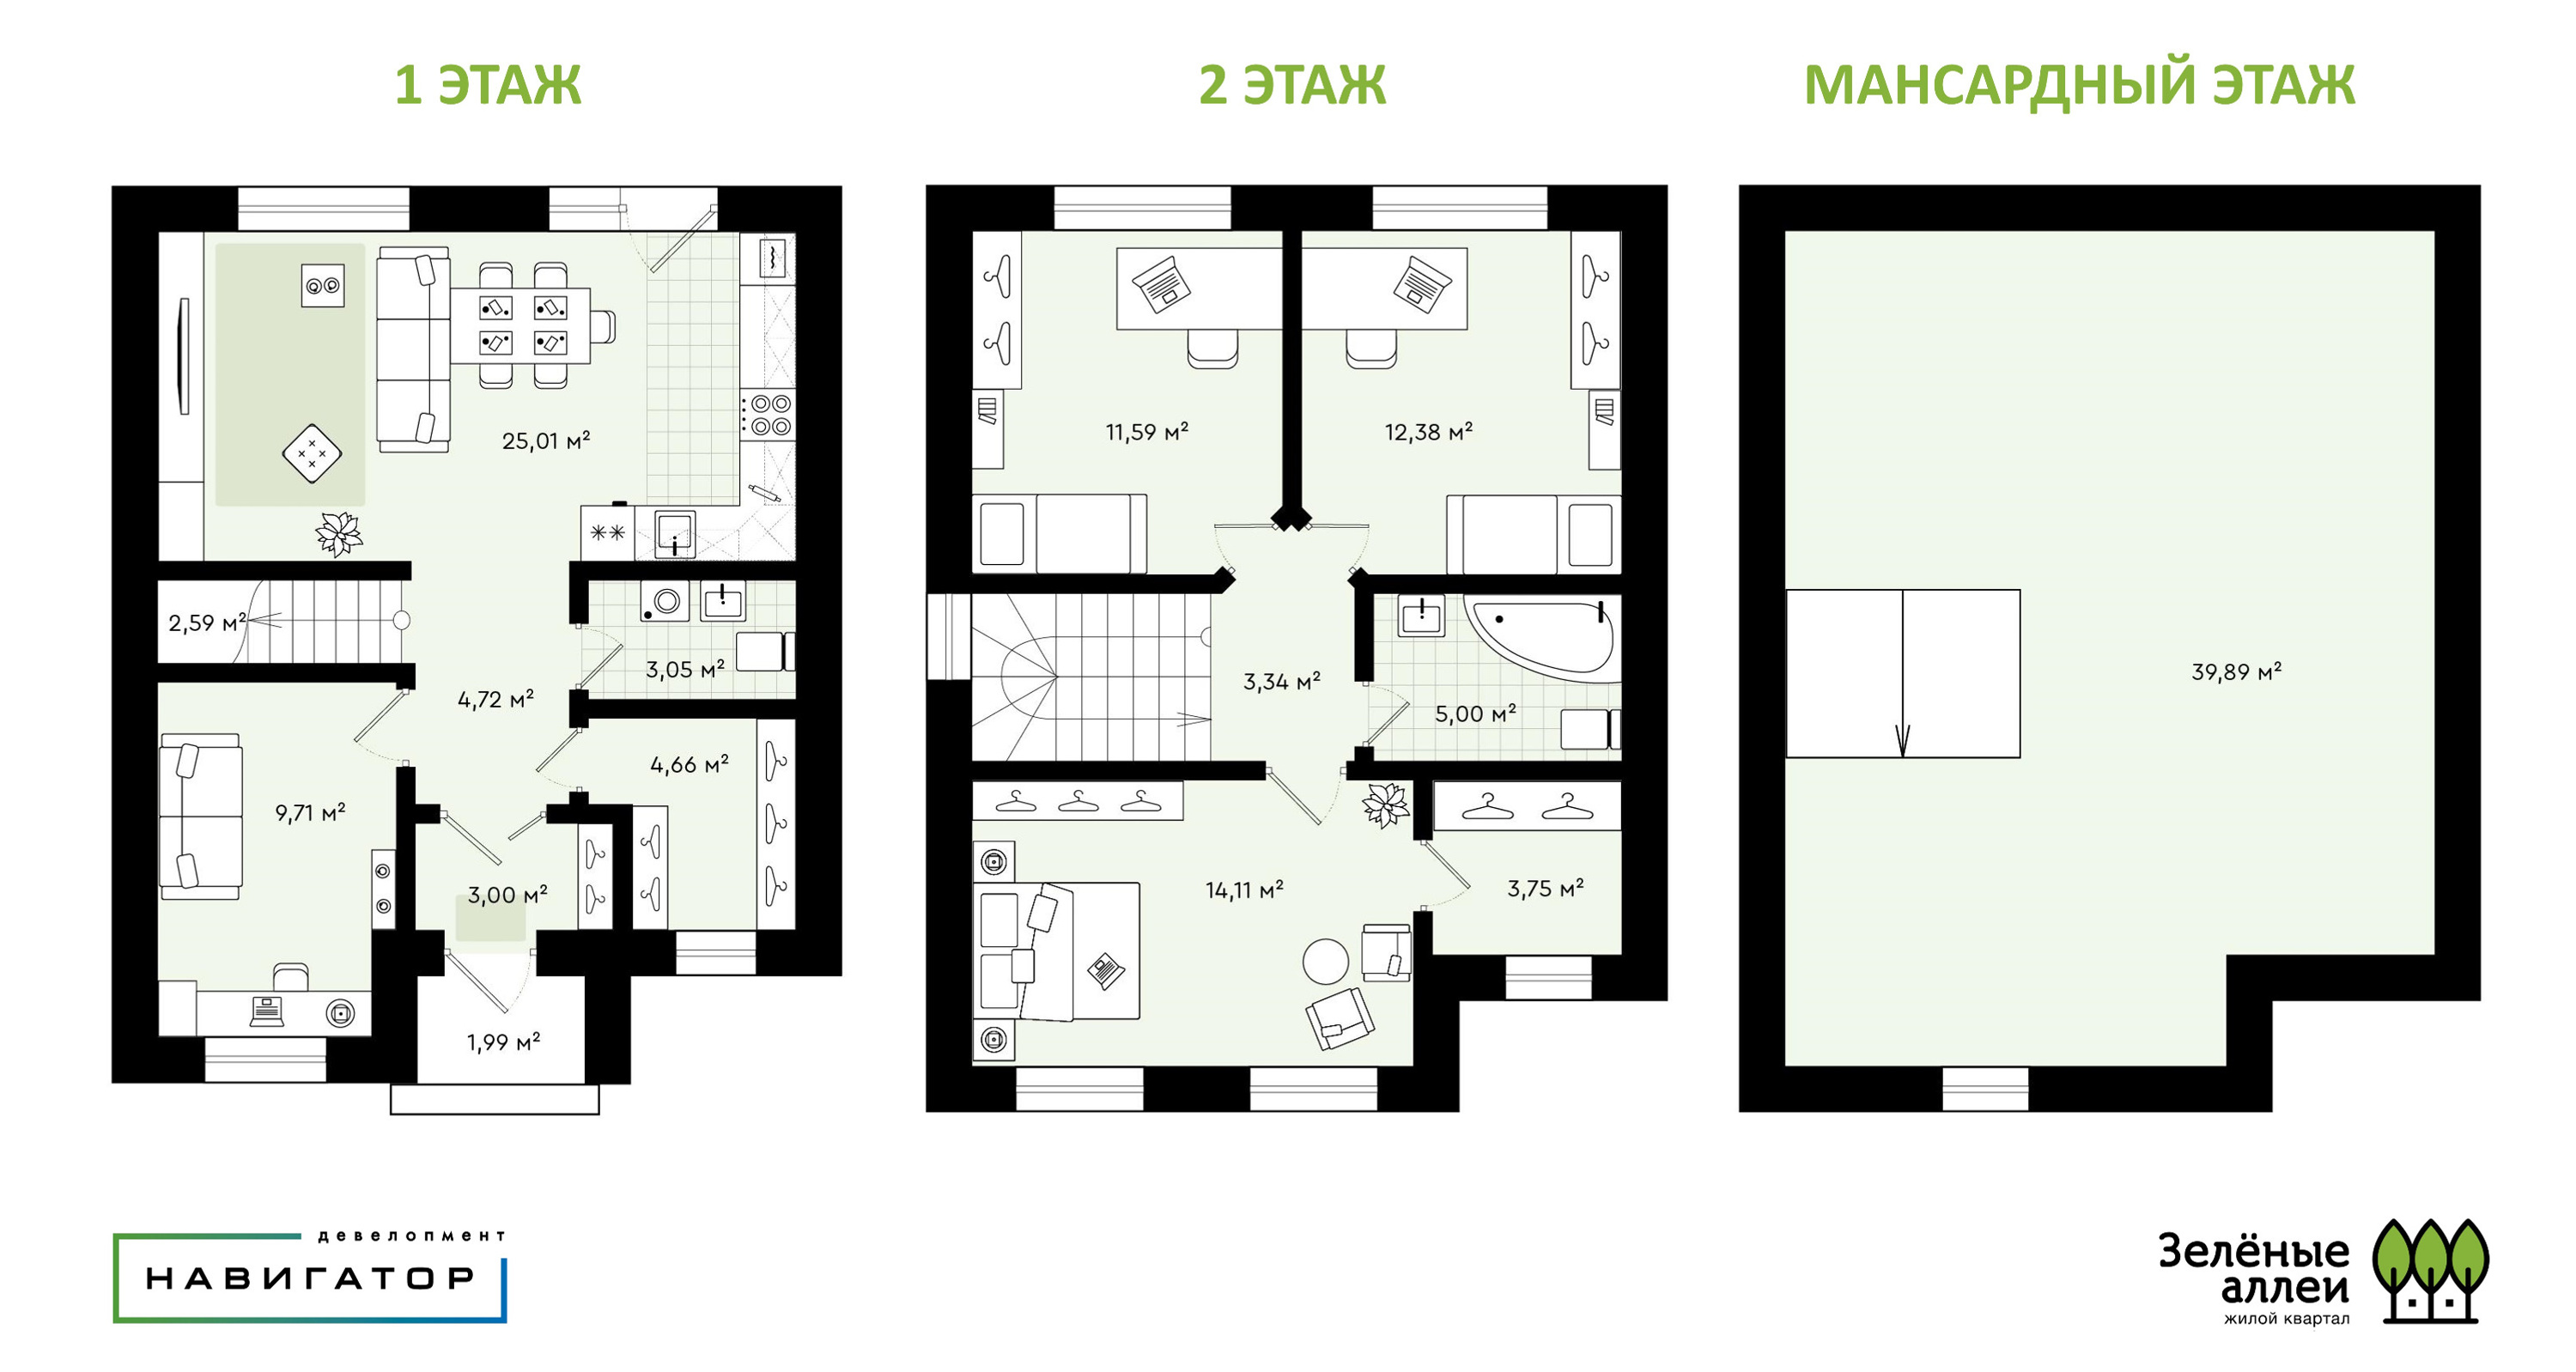 Таунхаусы больше похожи на собственный дом. В них два этажа и мансарда площадью 30 квадратных метров